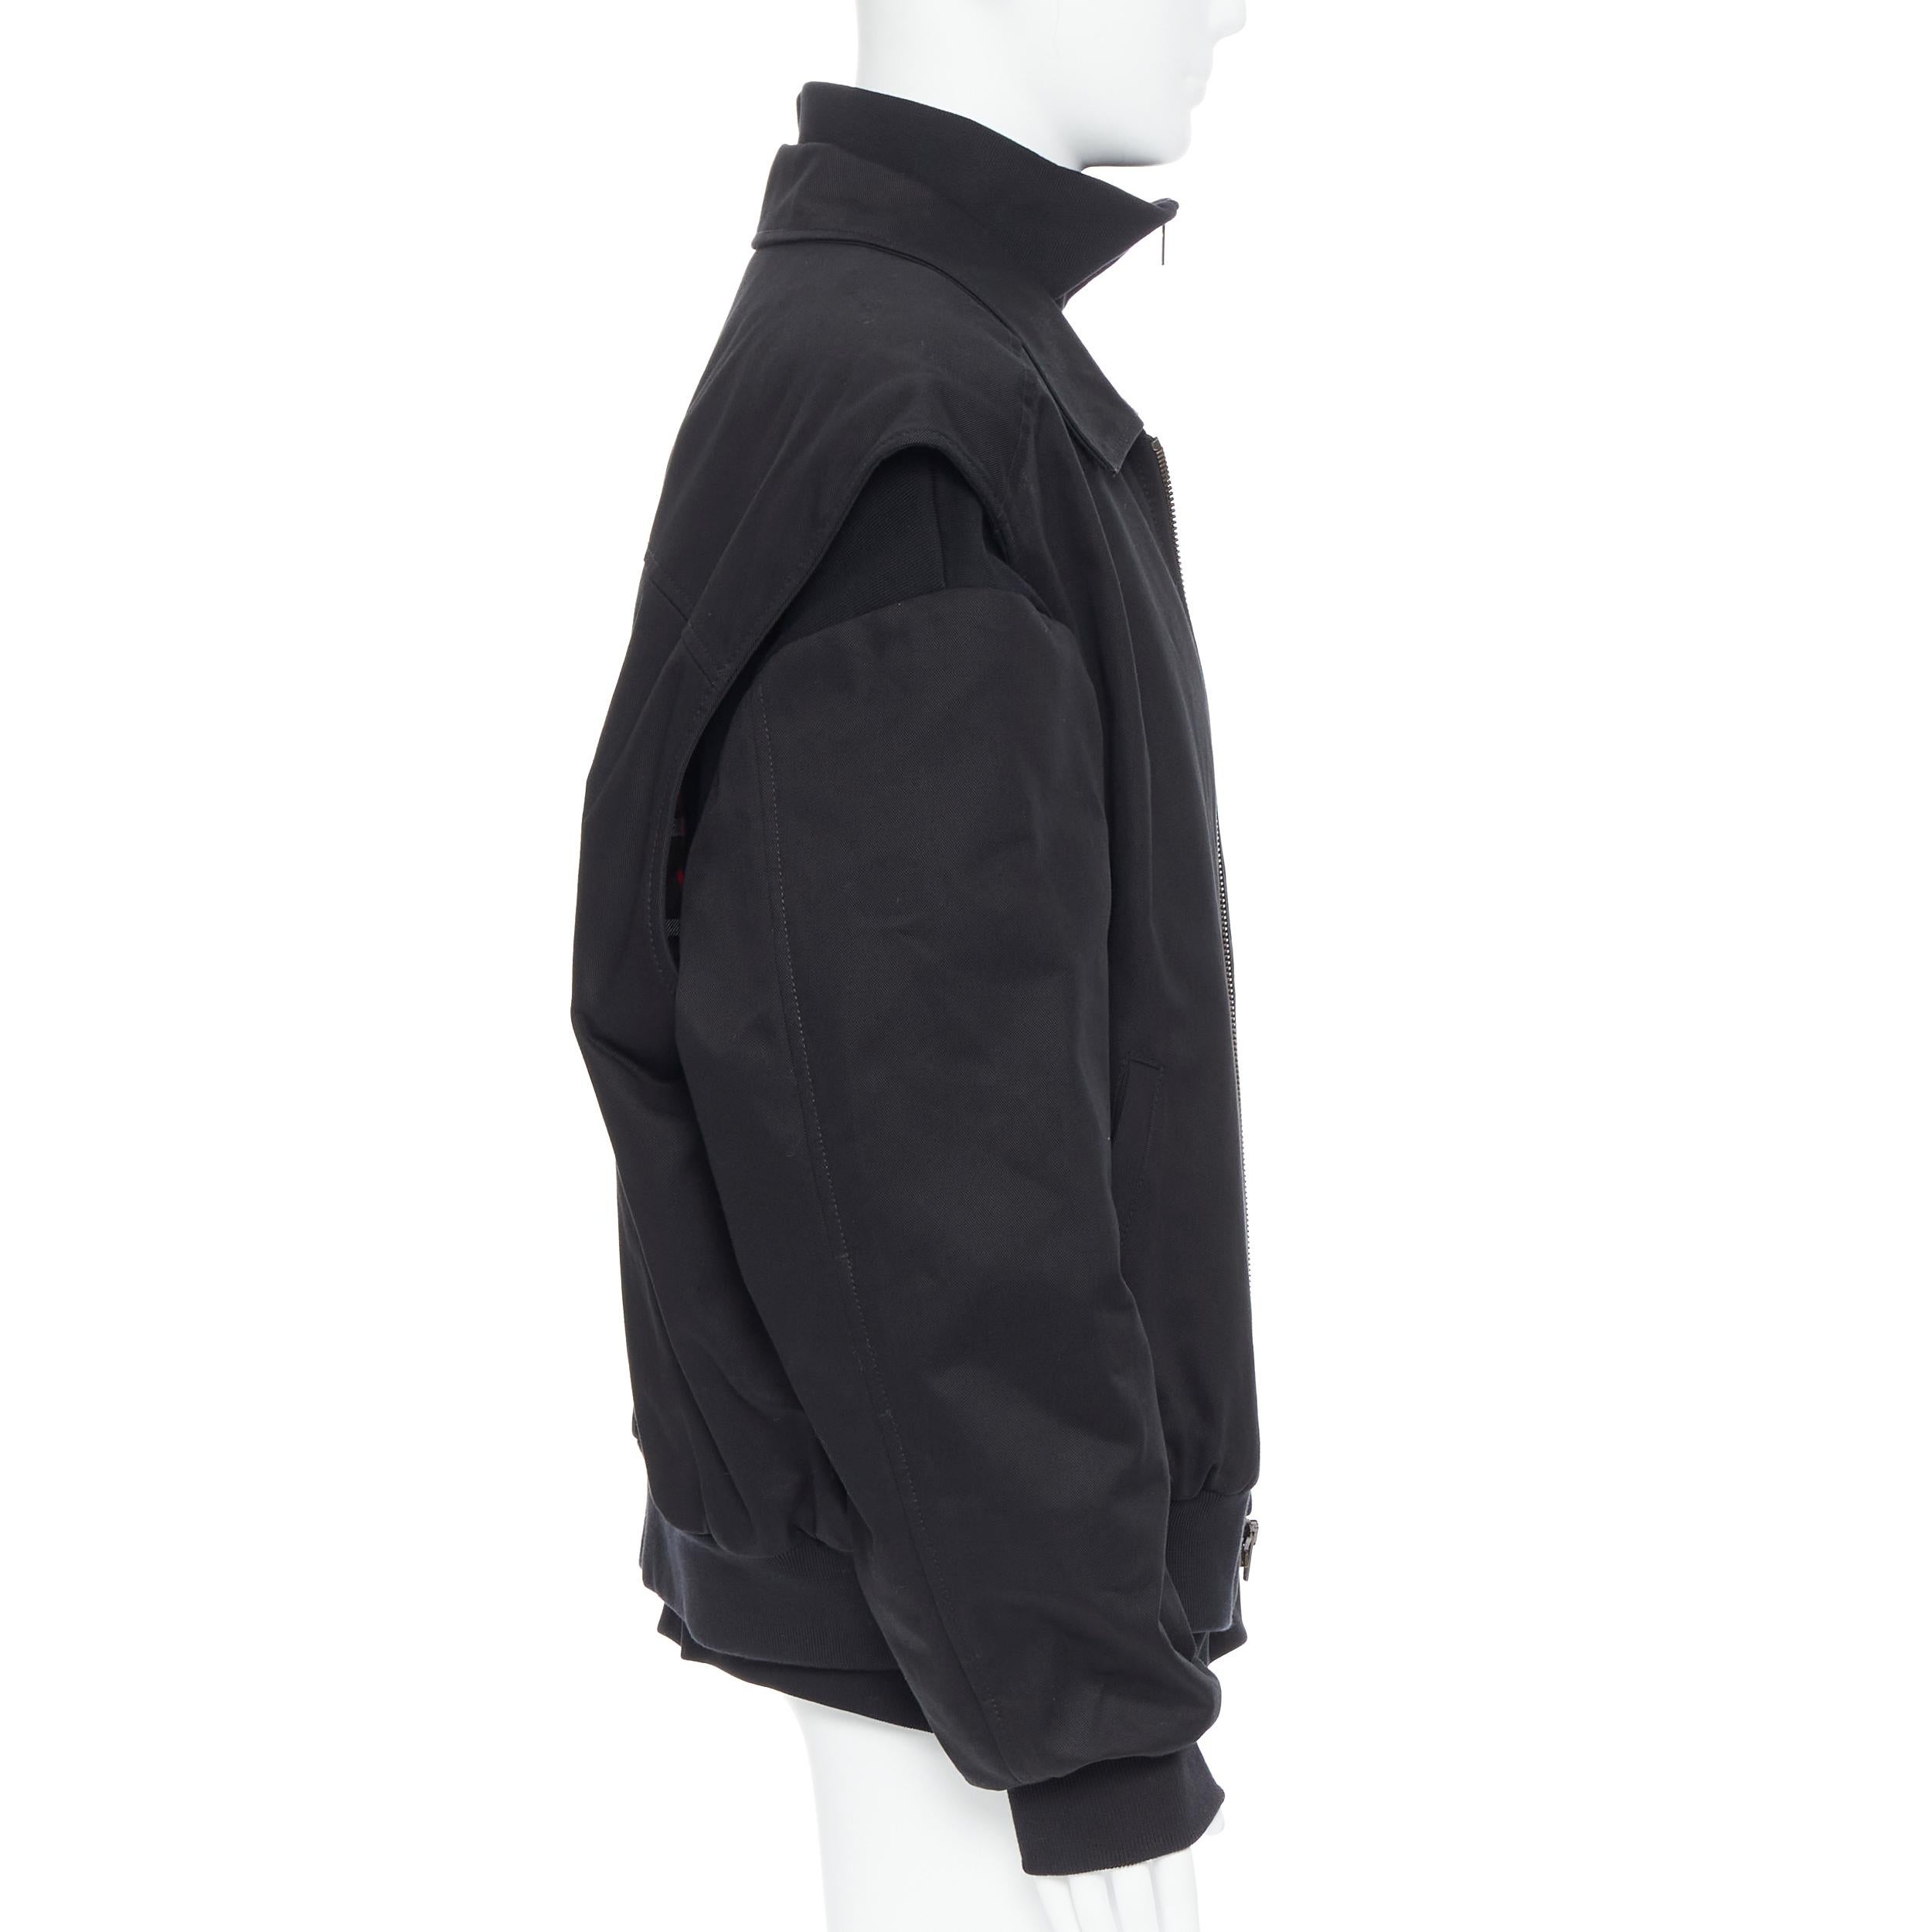 Men's new BALENCIAGA DEMNA 2019 Twin Set trucker vest half zip convertible jacket EU48